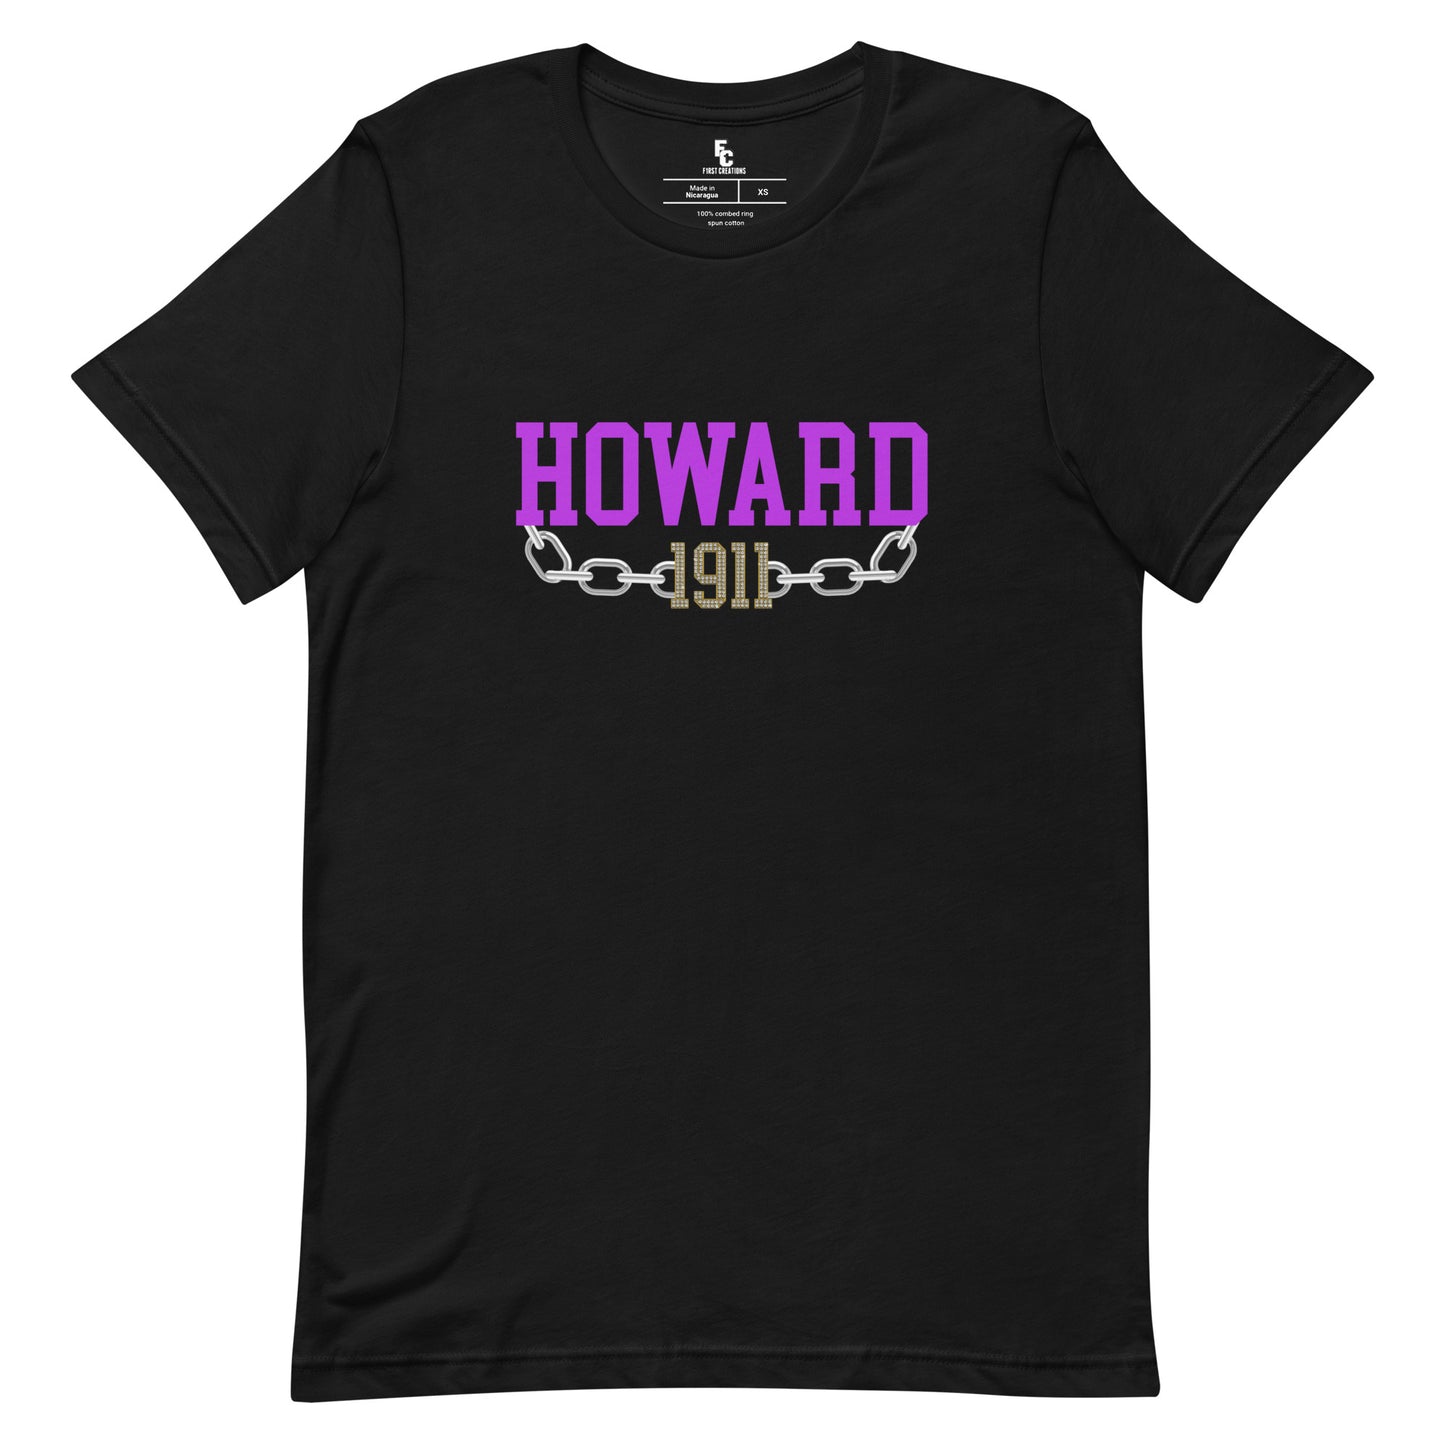 Howard 1911